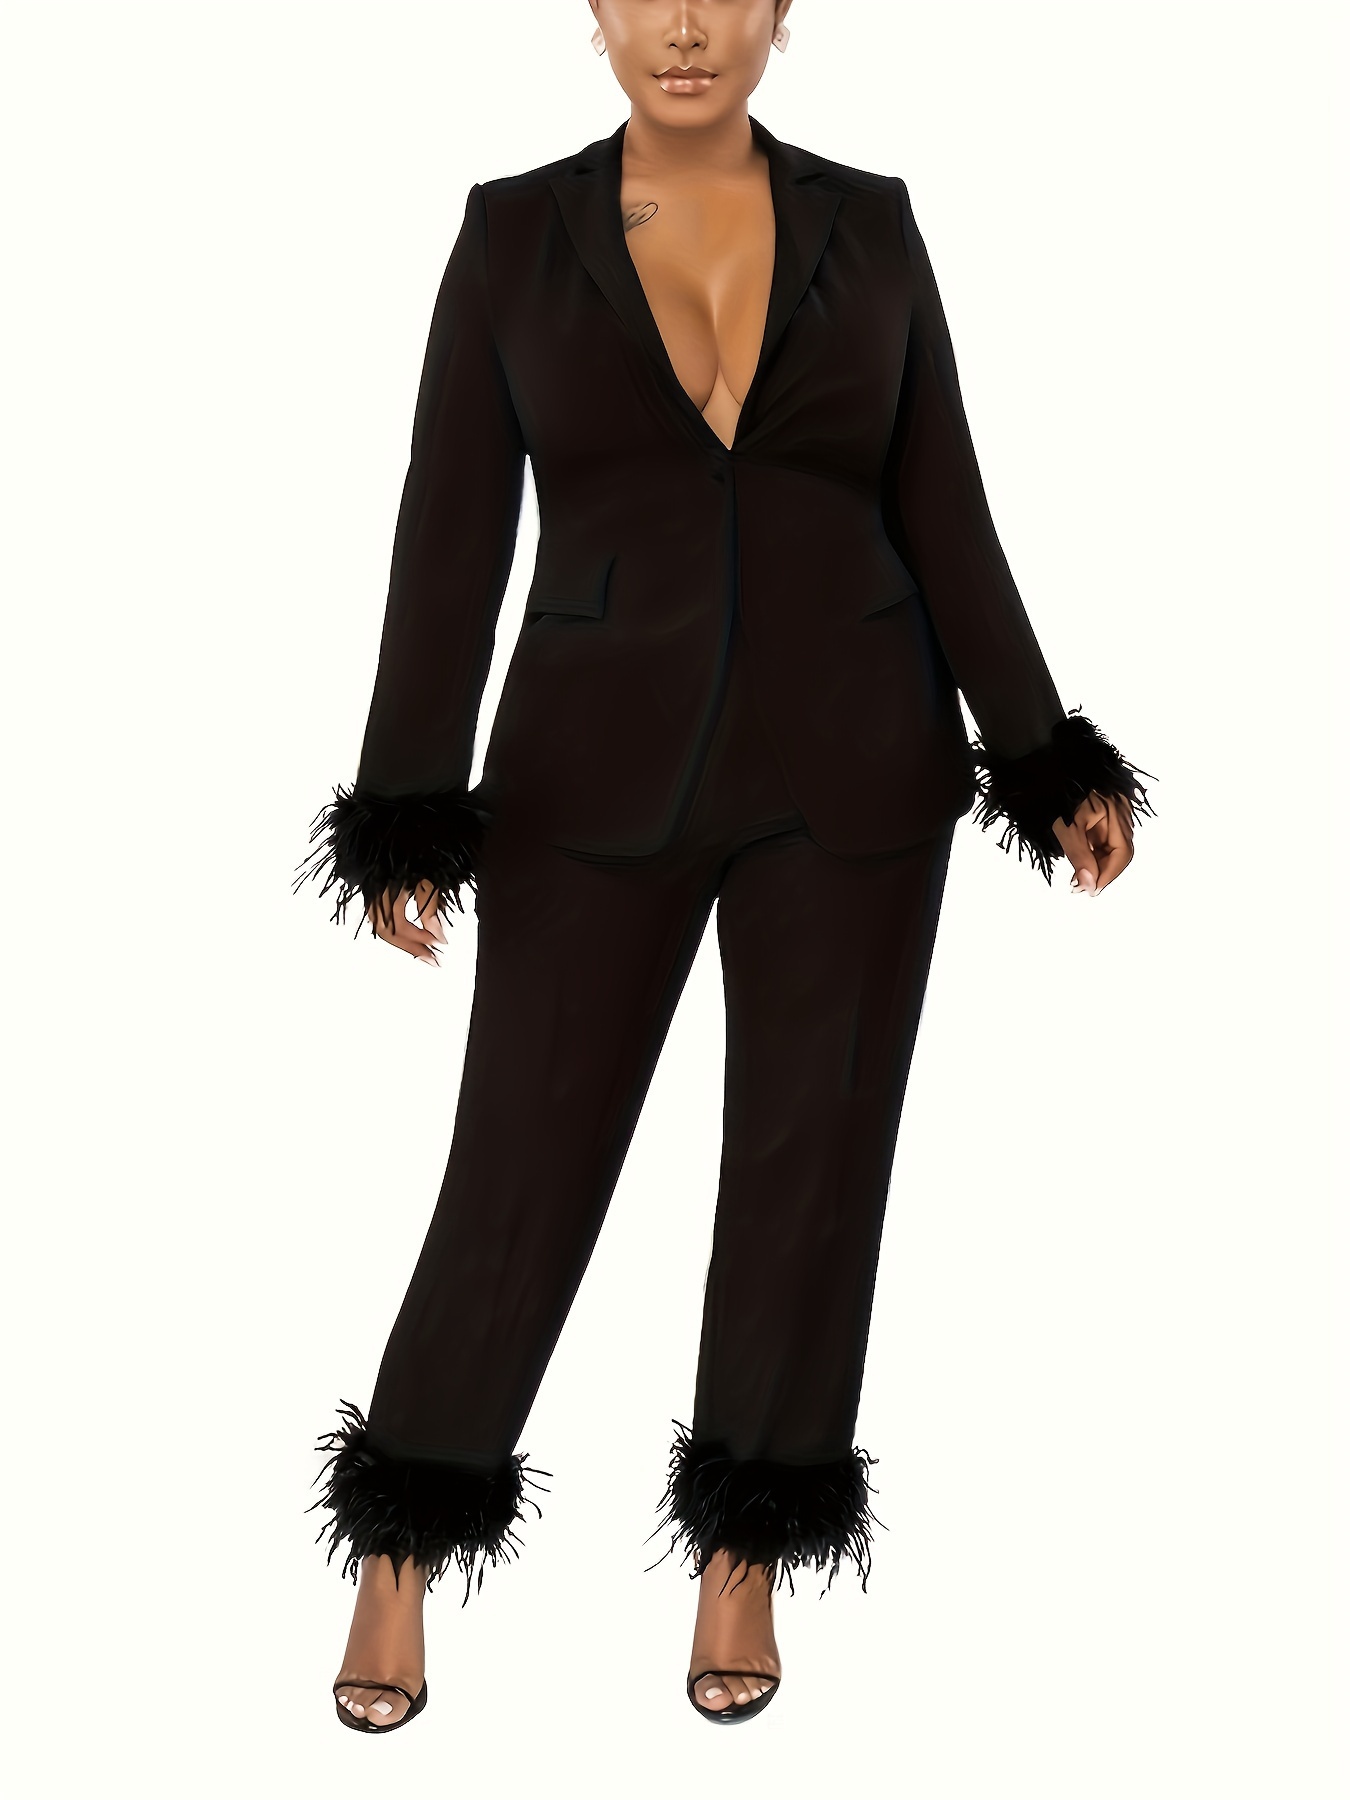 Plus Size Business Casual Suit Set, Women's Plus Solid Long Sleeve Single  Breast Button Lapel Collar * & Pants Suit Two Piece Set